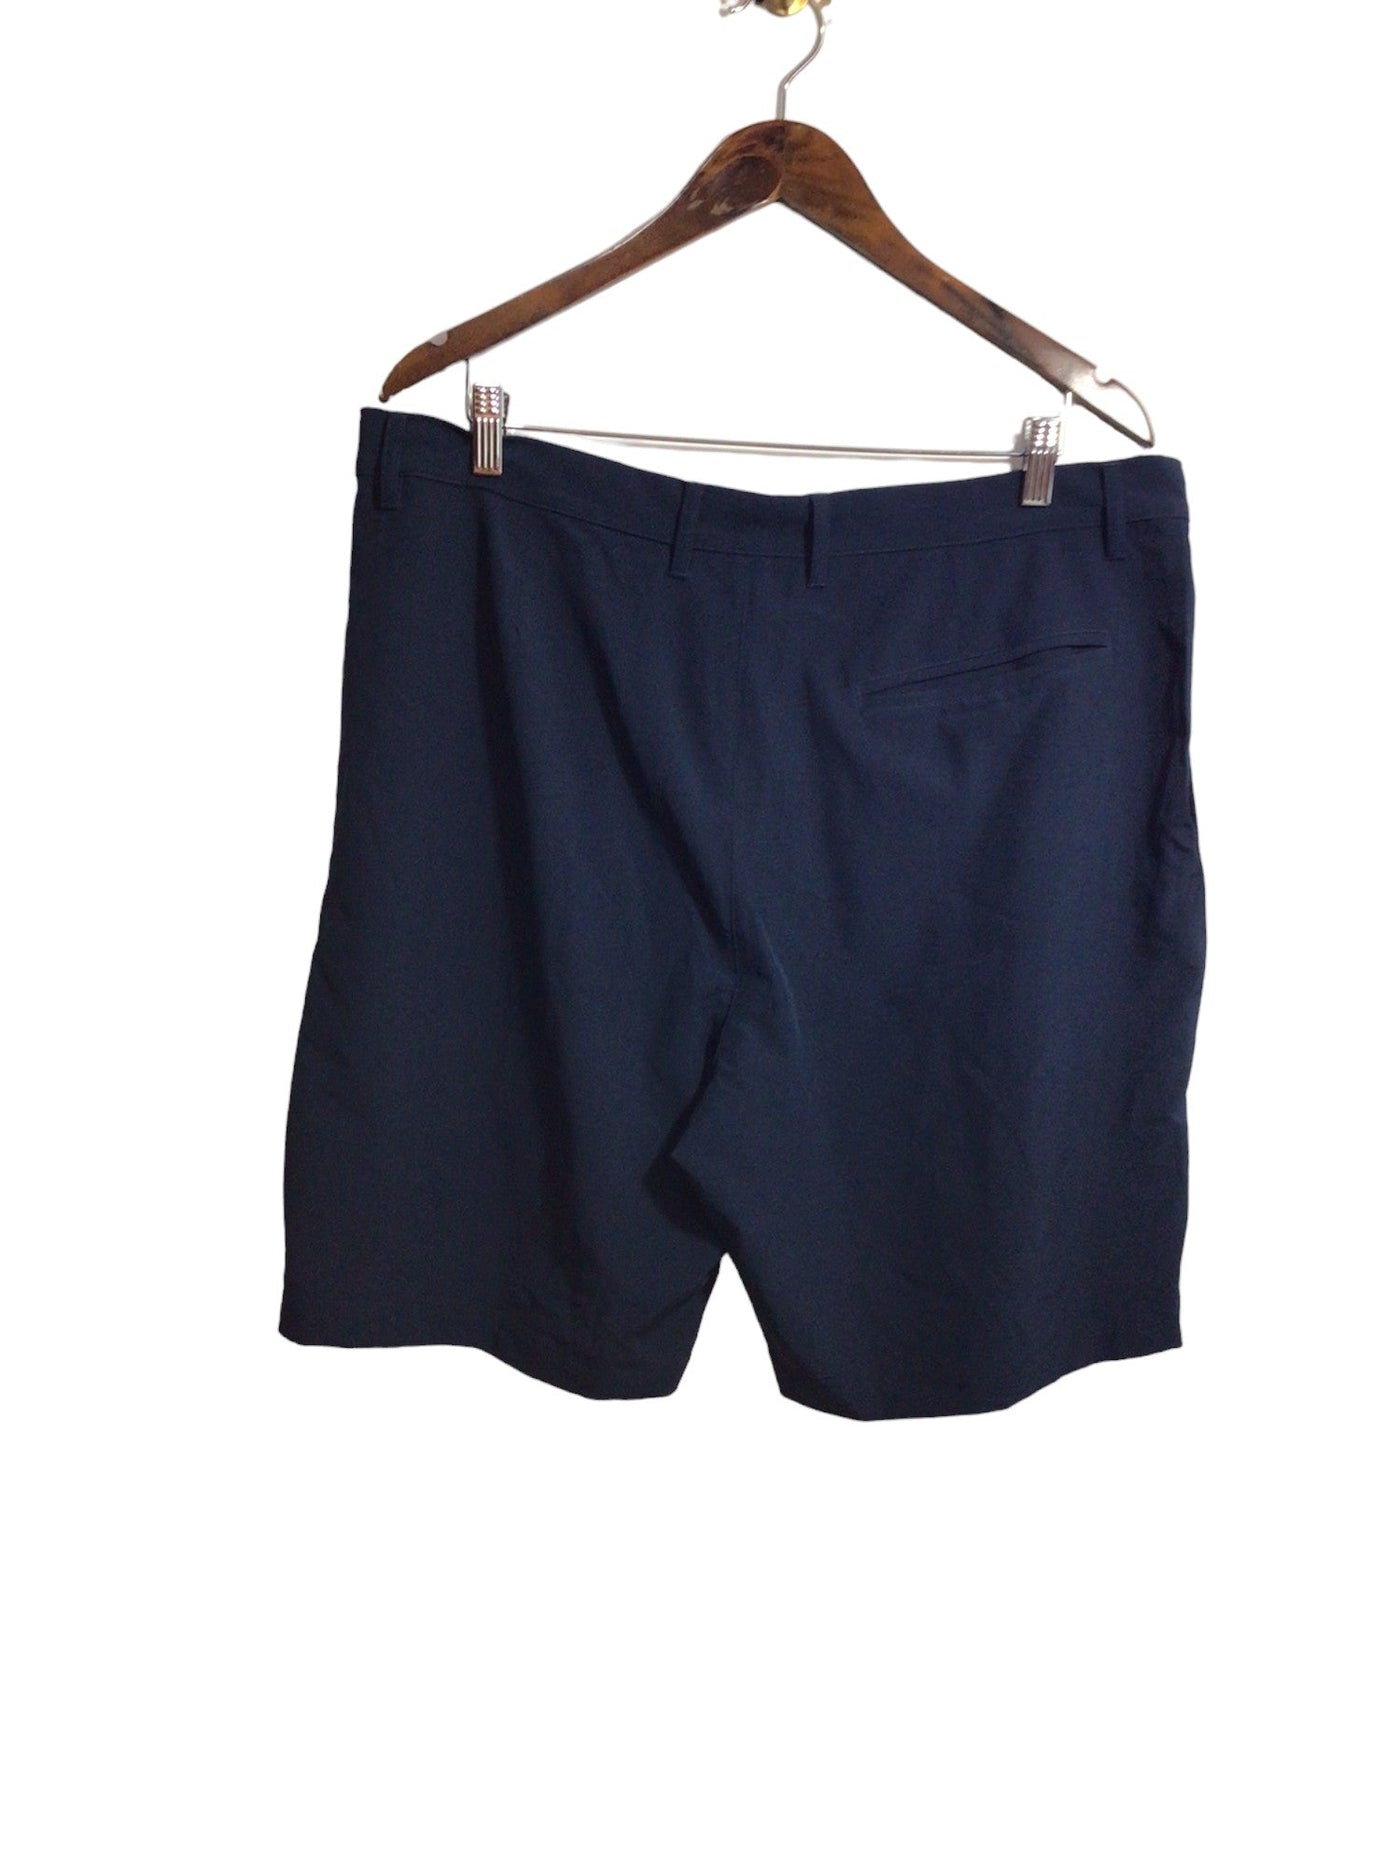 JOE FRESH Women Classic Shorts Regular fit in Blue - Size 36 | 9.99 $ KOOP